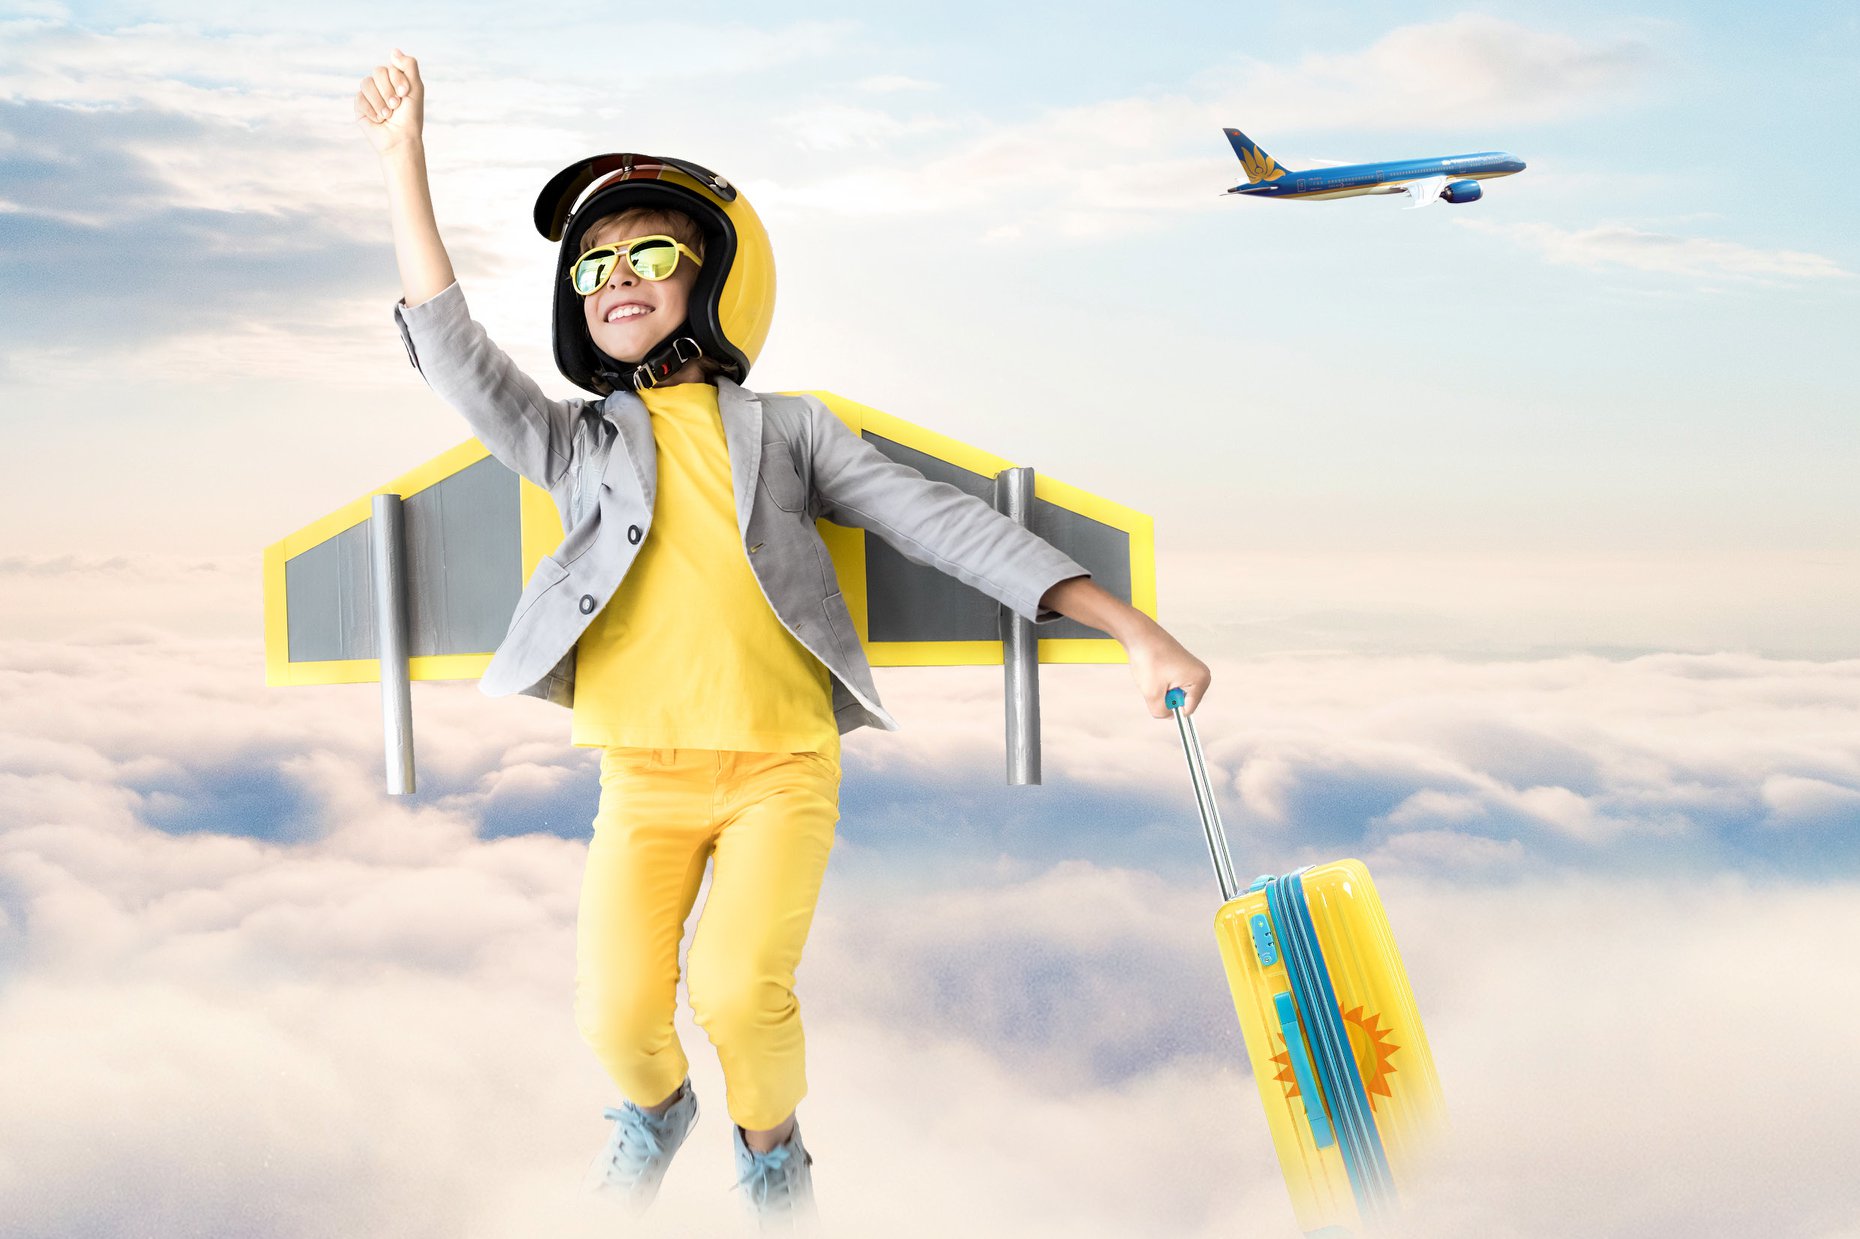 Giá vé máy bay của trẻ em được tính như thế nào? - iVIVU.com